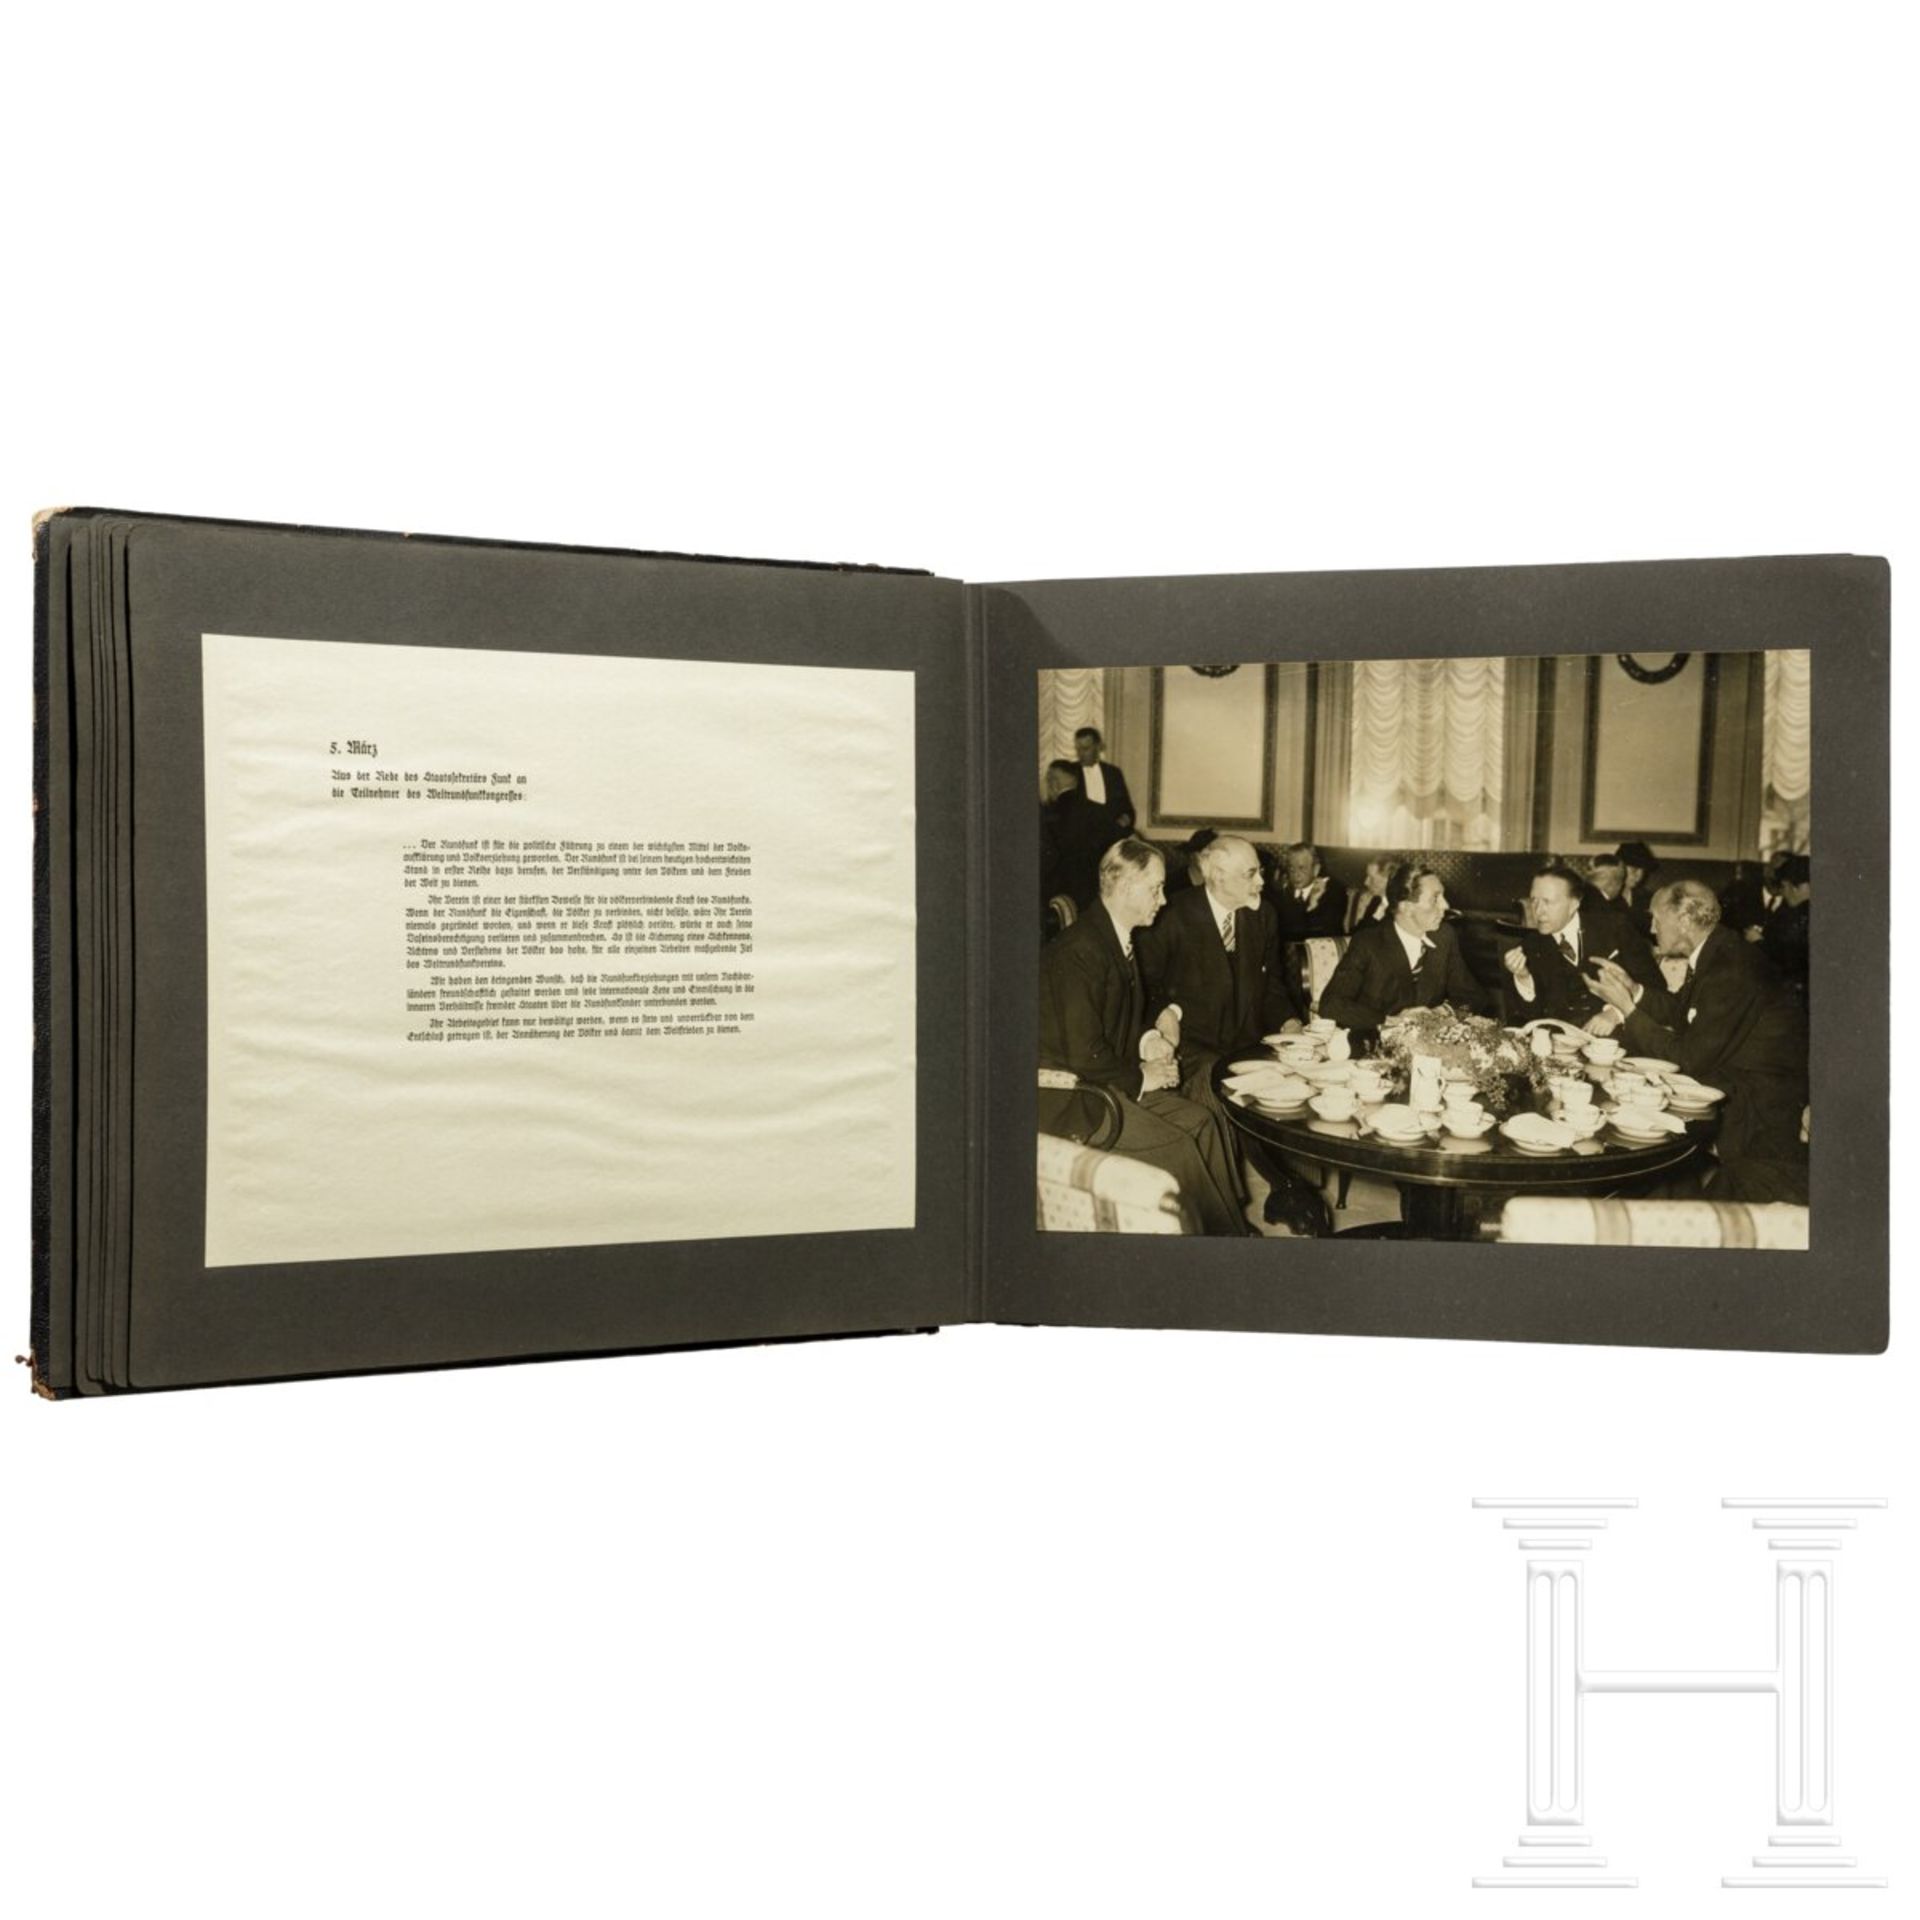 Geschenk-Fotoalbum der Partei 1937 mit 56 großformatigen Fotos und Textblättern - Image 13 of 17